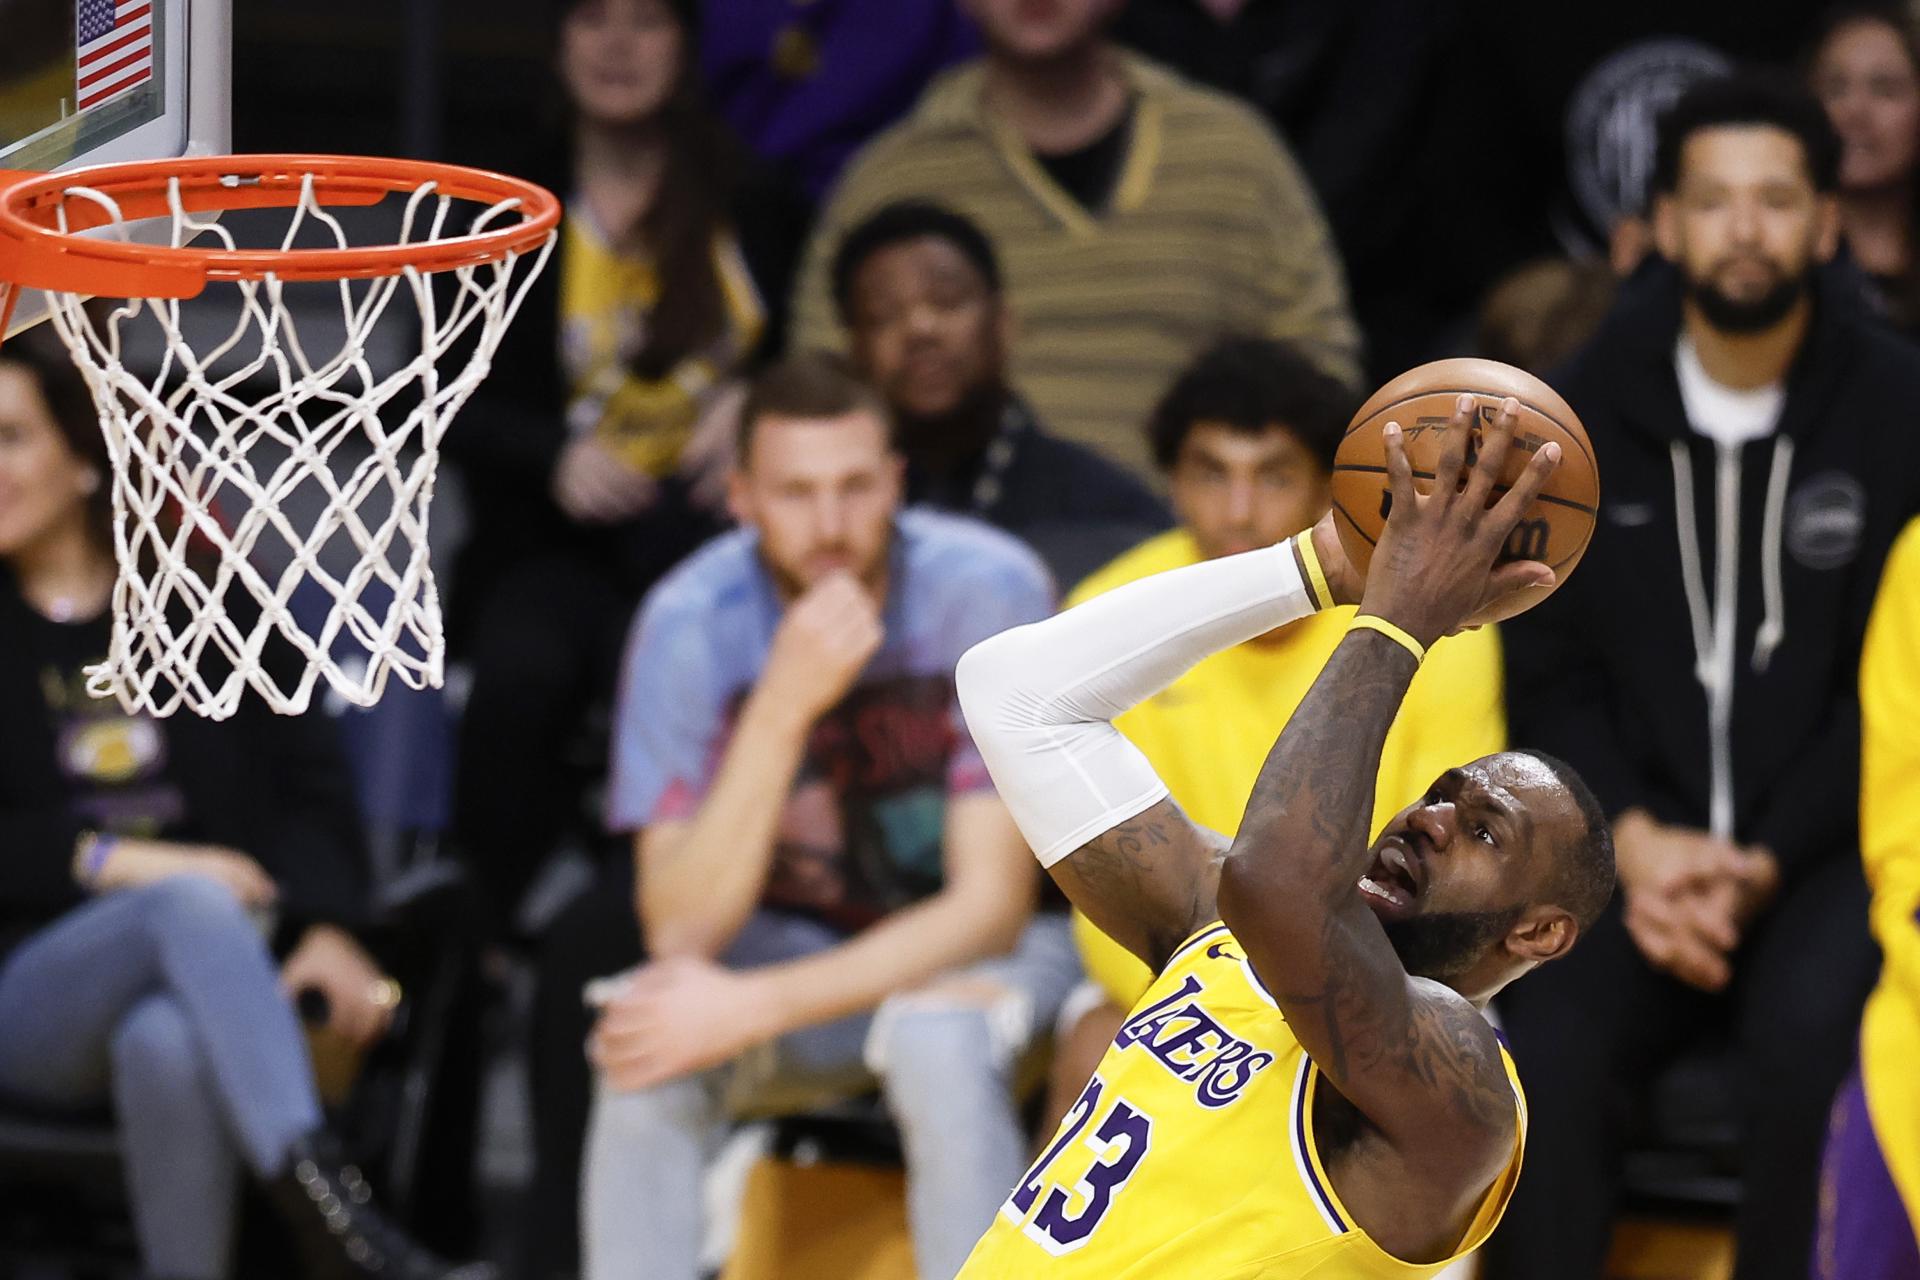 El alero de Los Angeles Lakers LeBron James, en una fotogra´fia de archivo. EFE/EPA/Caroline Brehman